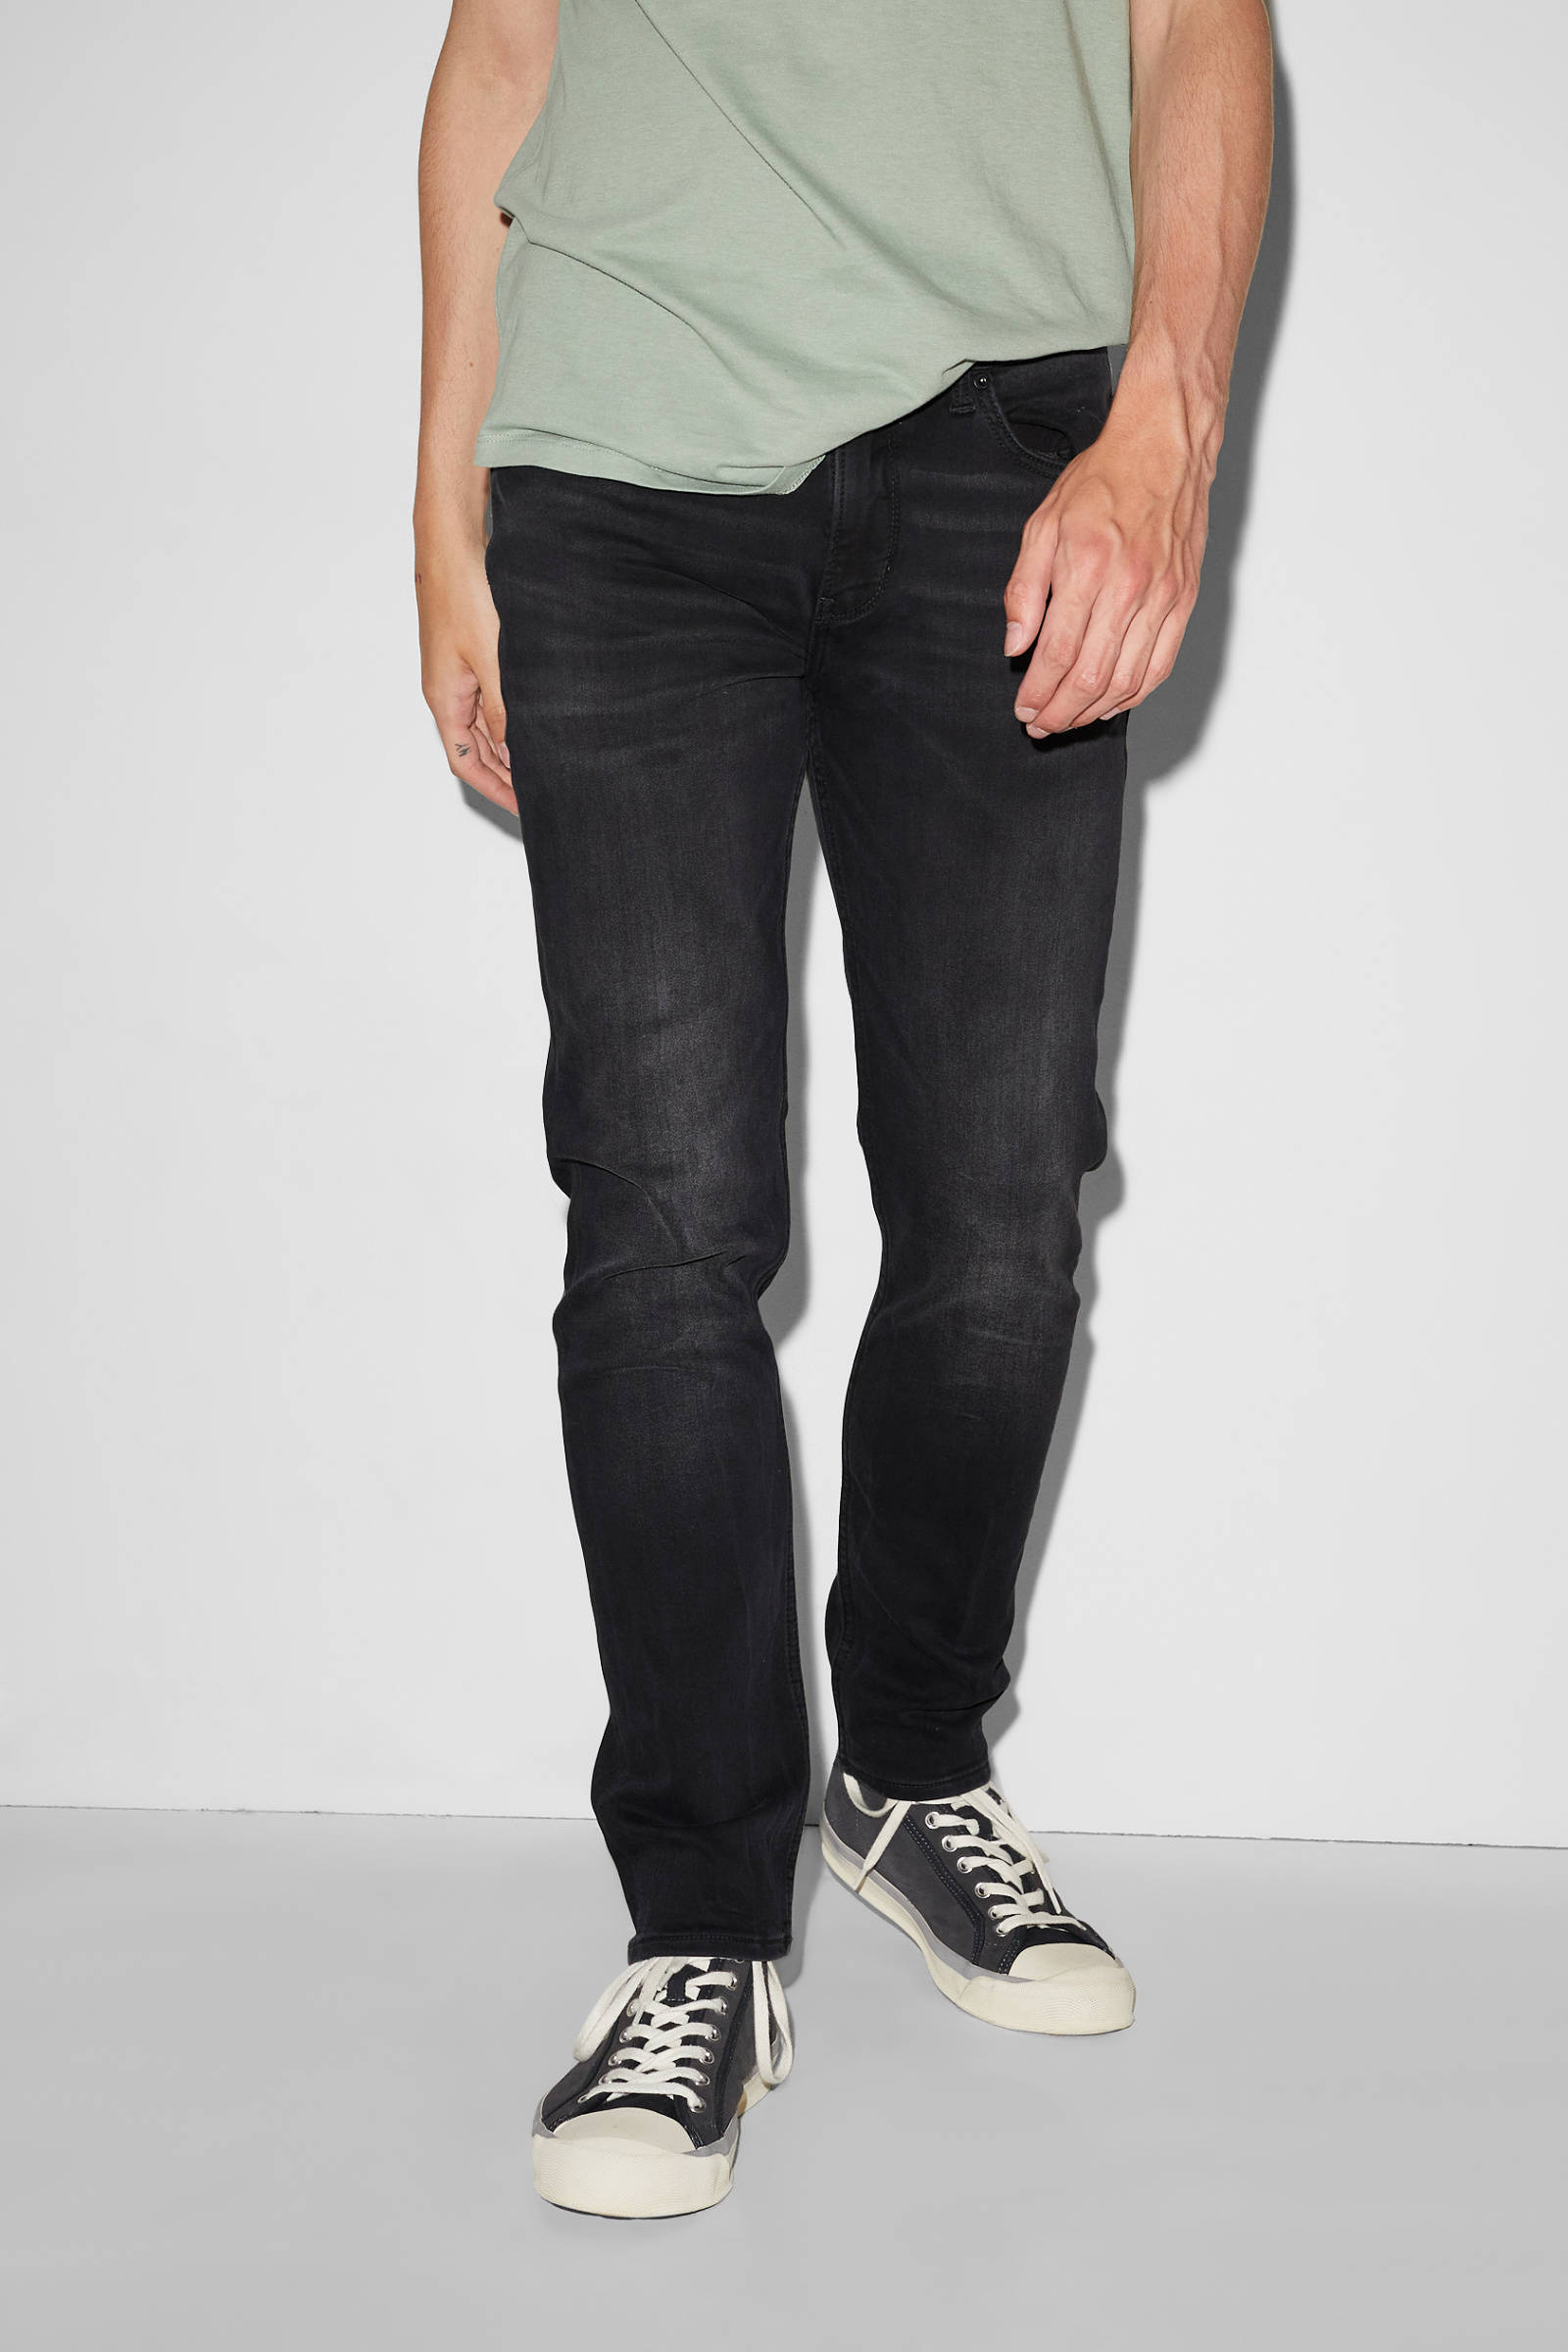 Mode Spijkerbroeken Slim jeans Salsa Slim jeans zwart casual uitstraling 